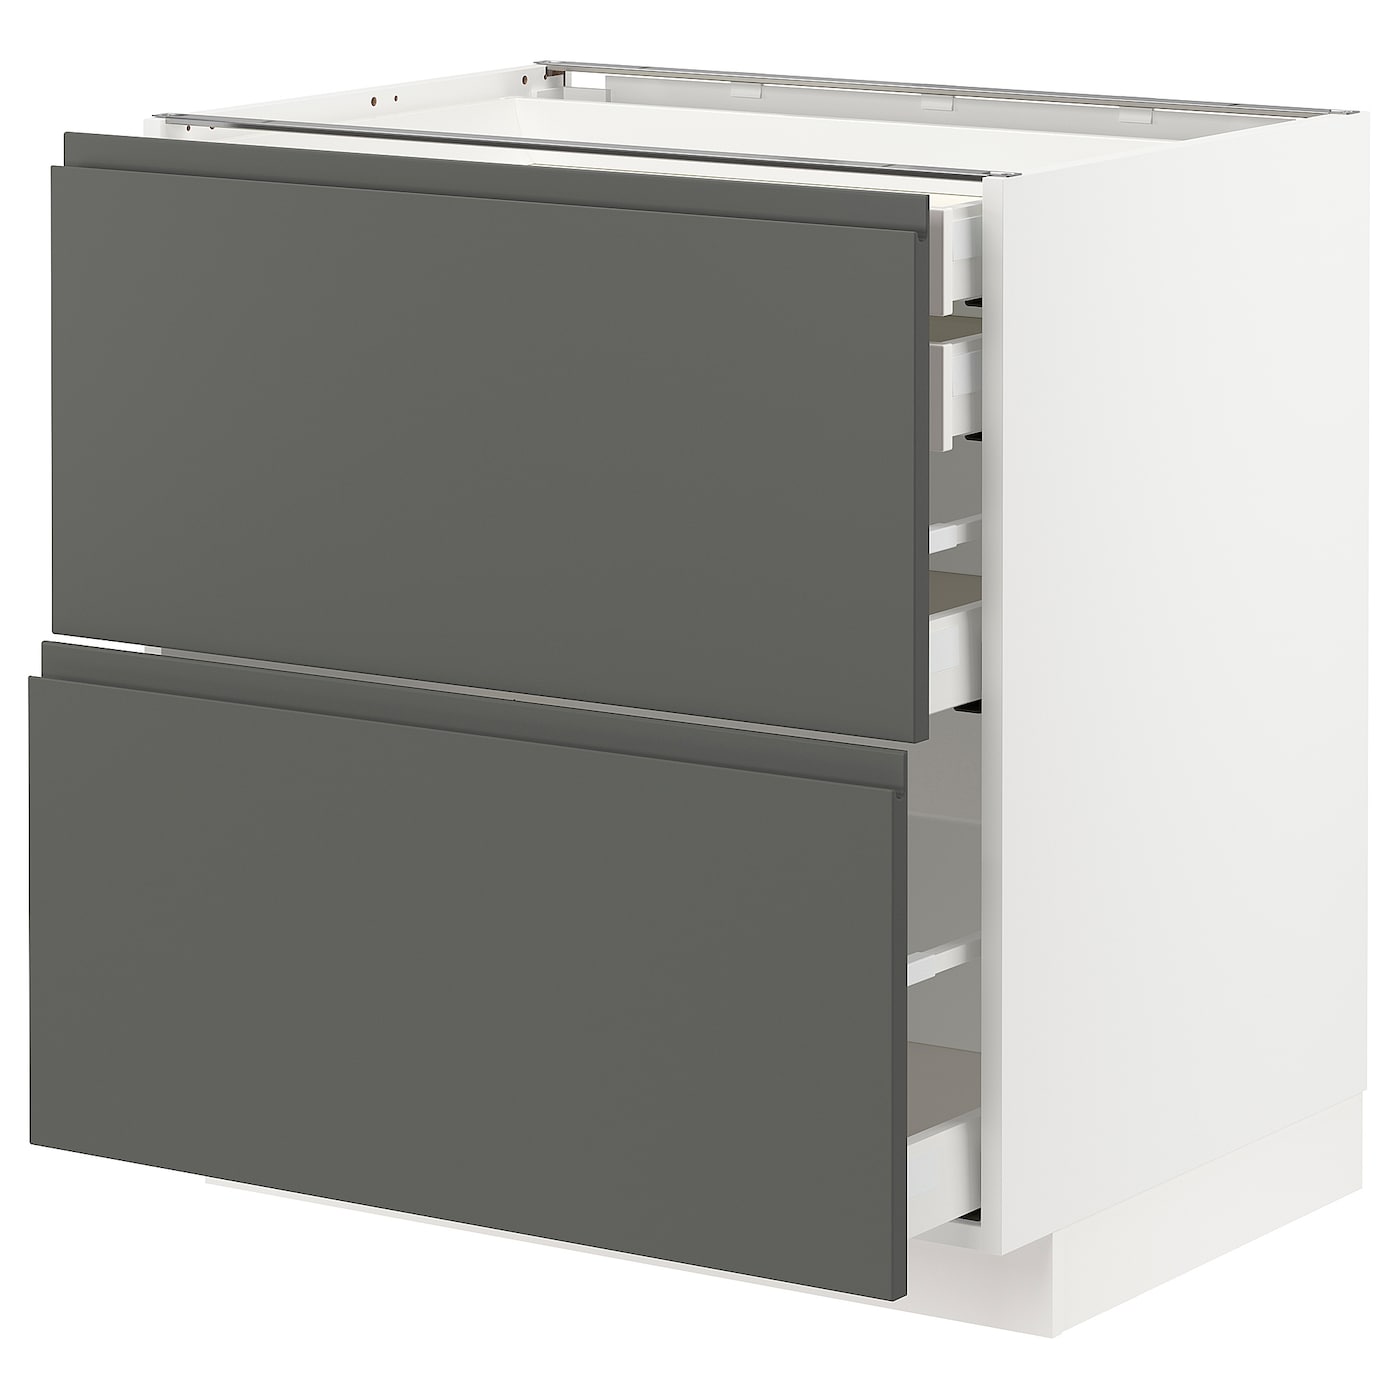 Напольный кухонный шкаф  - IKEA METOD MAXIMERA, 88x62x80см, белый/темно-серый, МЕТОД МАКСИМЕРА ИКЕА